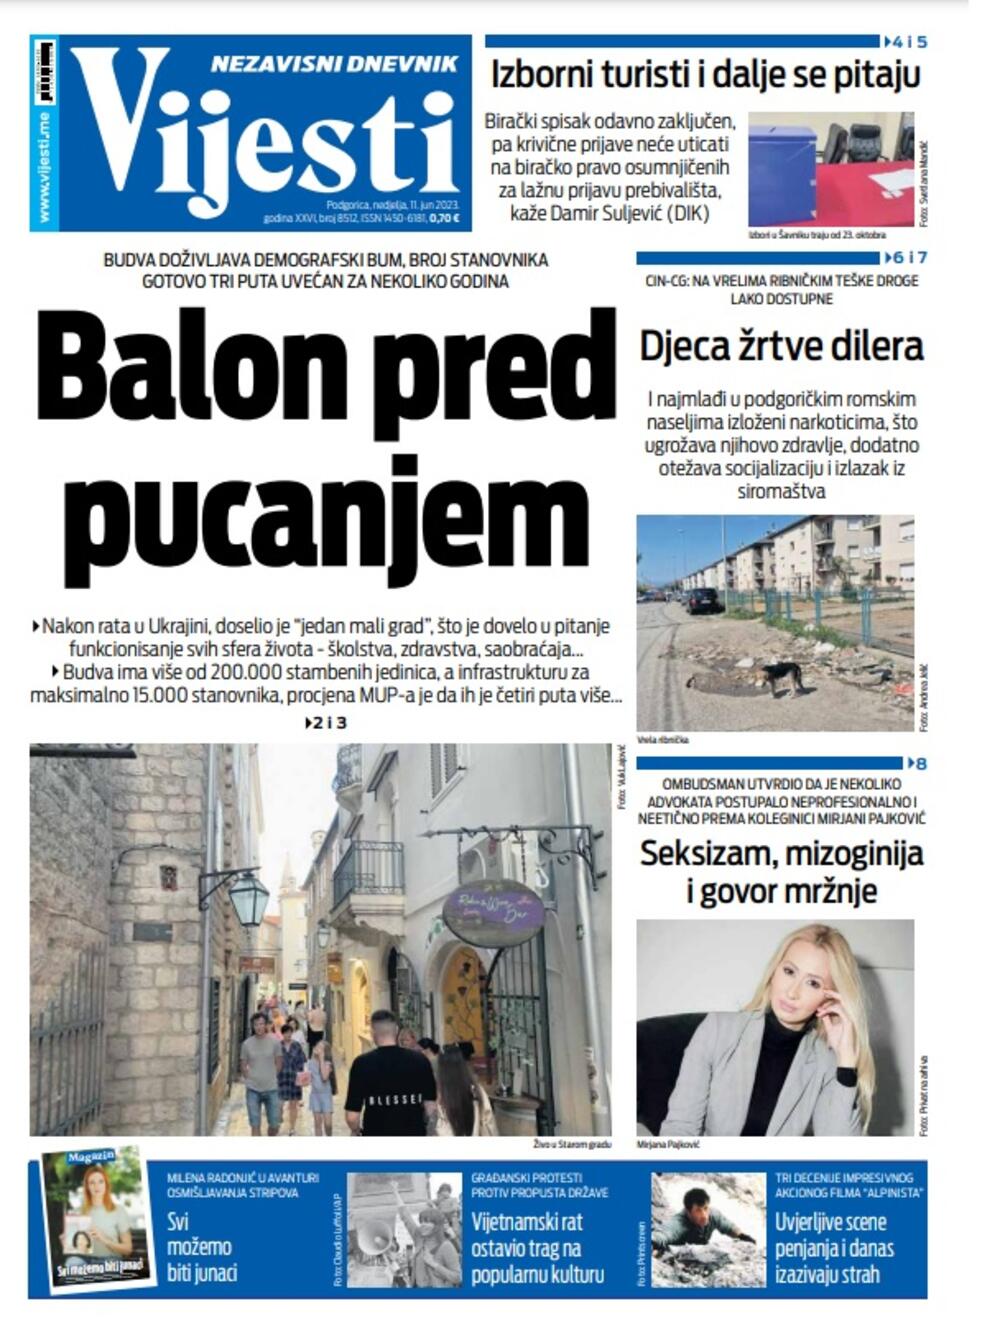 Naslovna strana "Vijesti" za 11. jun 2023. godine, Foto: Vijesti